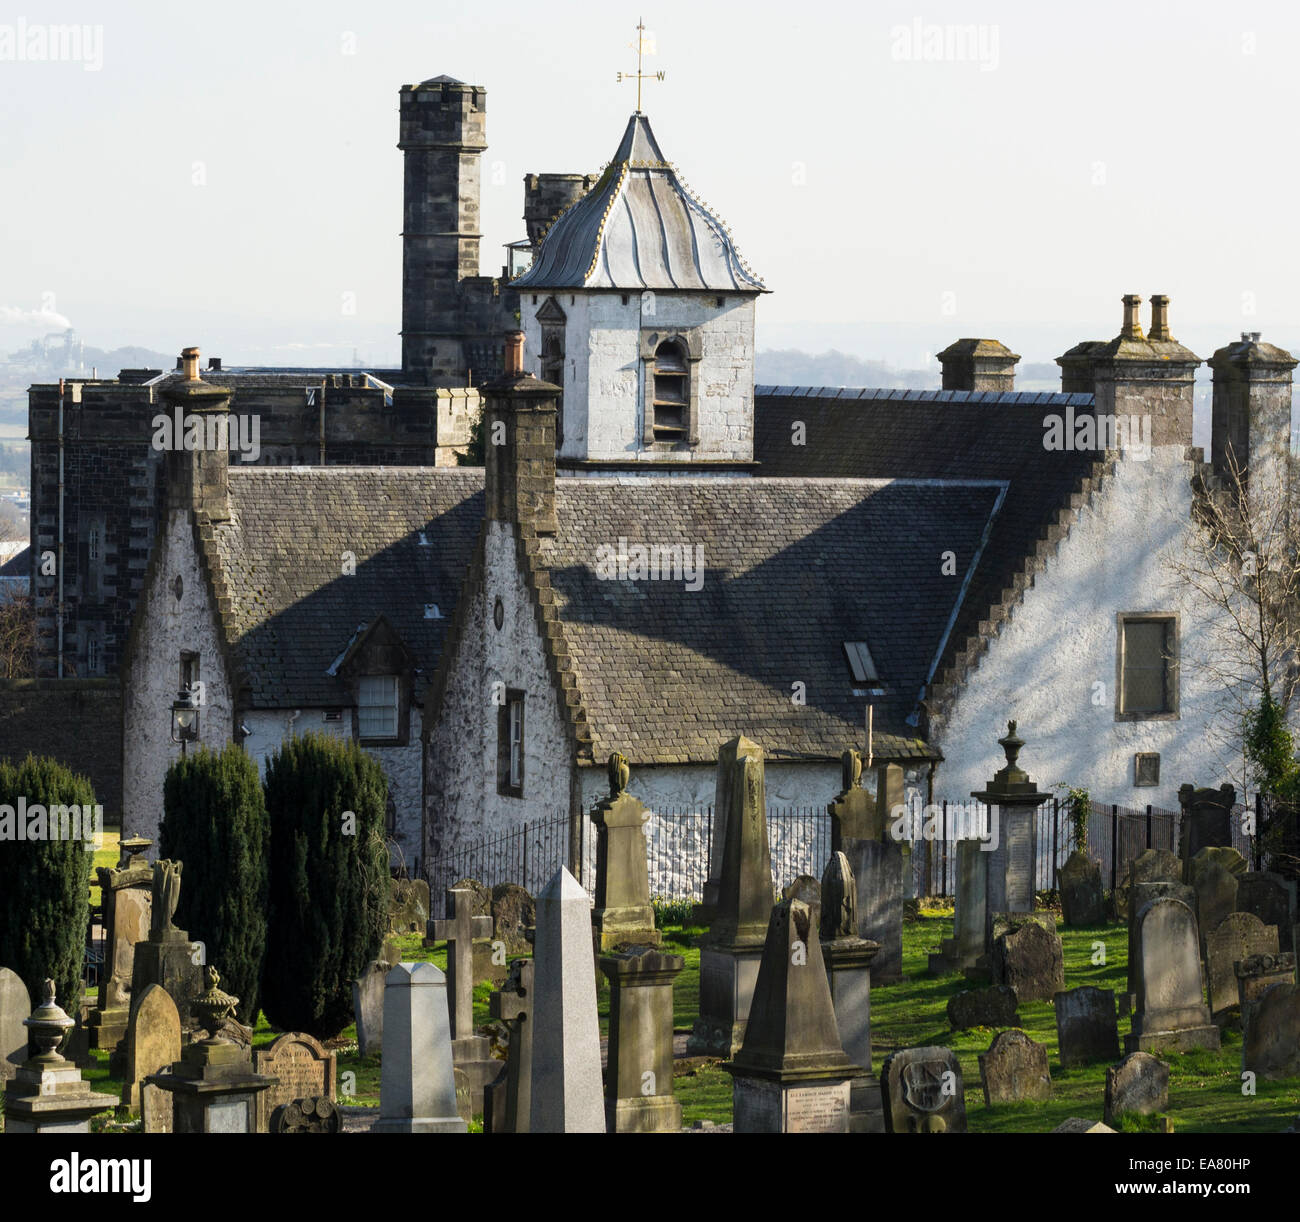 La bella e storica Cowane's Hospital di Stirling, in Scozia. Cimitero Vecchio in Forefront e Stirling vecchia prigione in background. Foto Stock